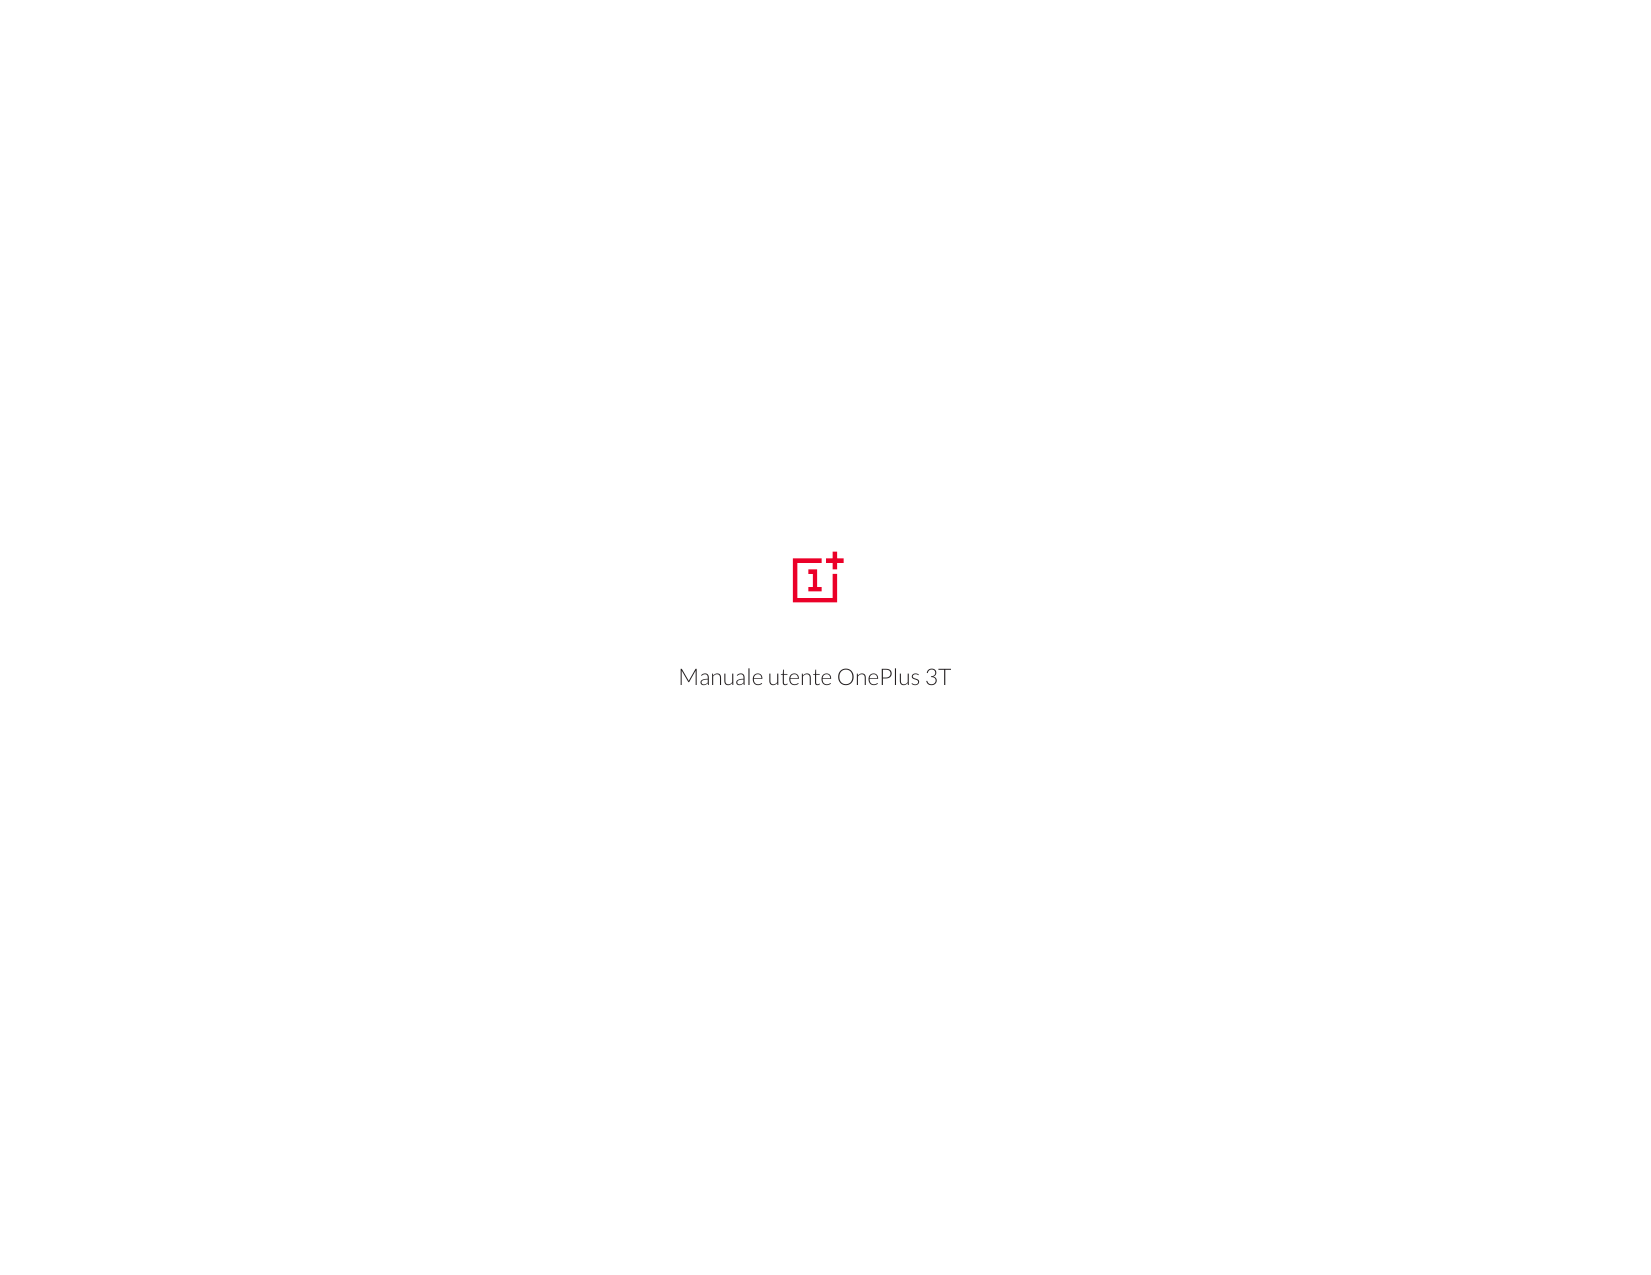 Manuale utente OnePlus 3T